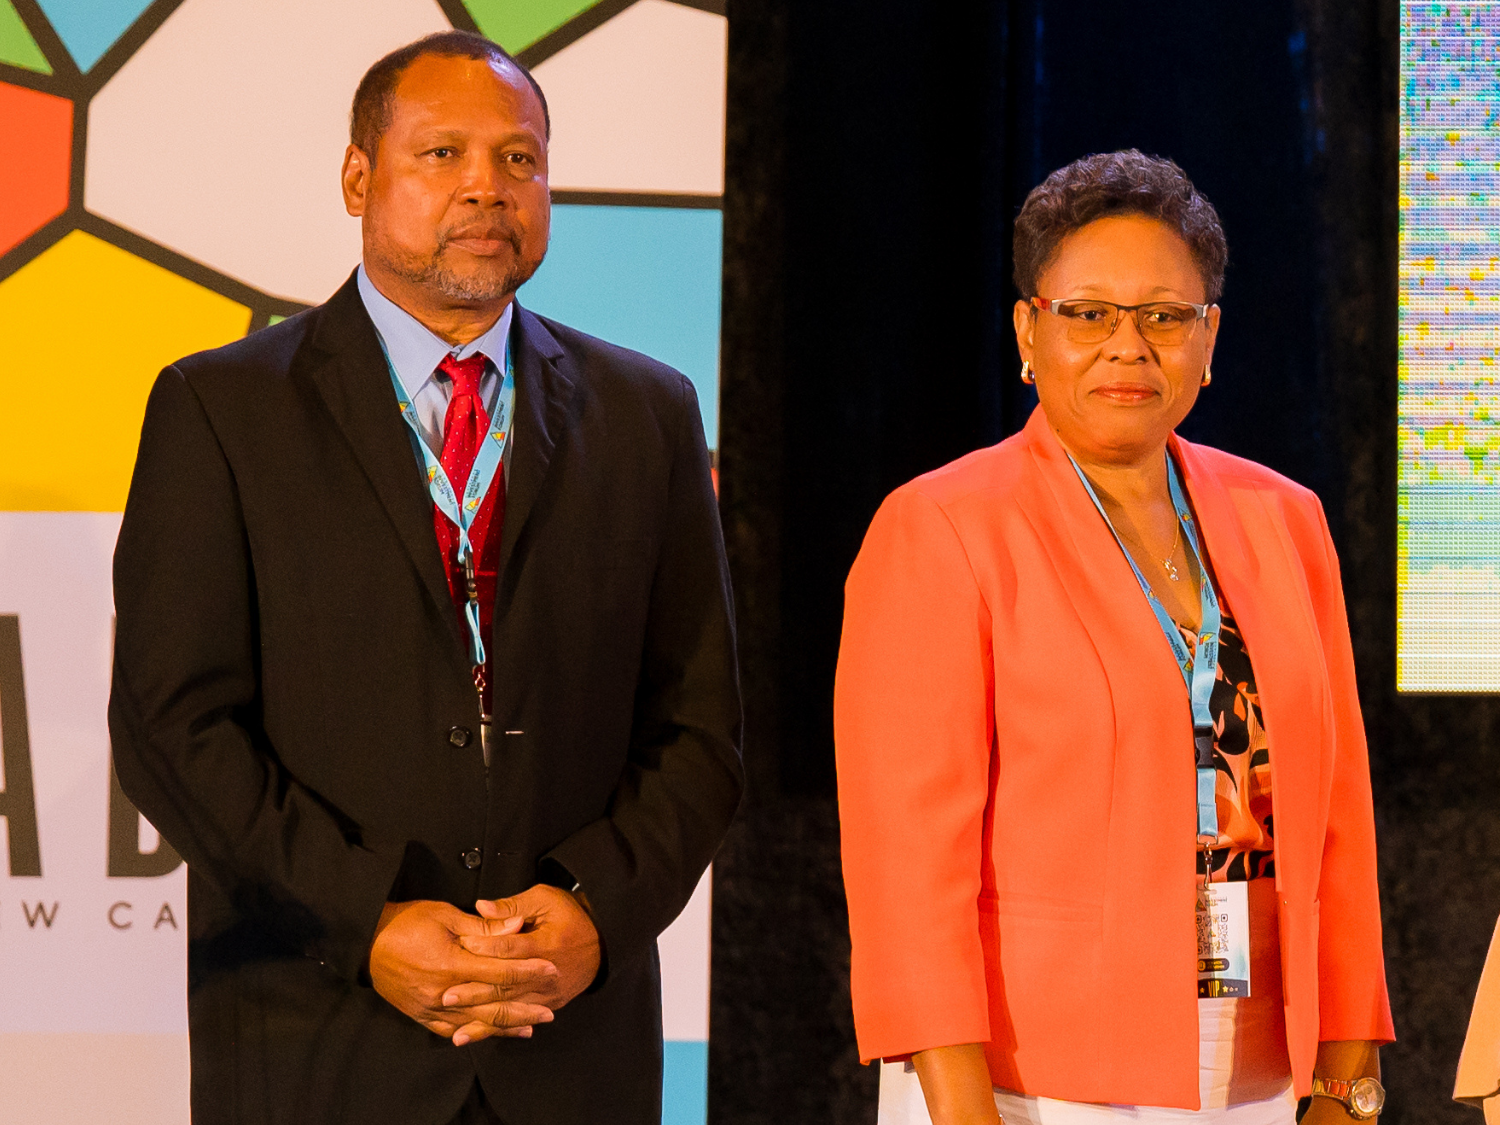 El Presidente y el Vicepresidente reelegidos para el Consejo de Administración de Caribbean Export